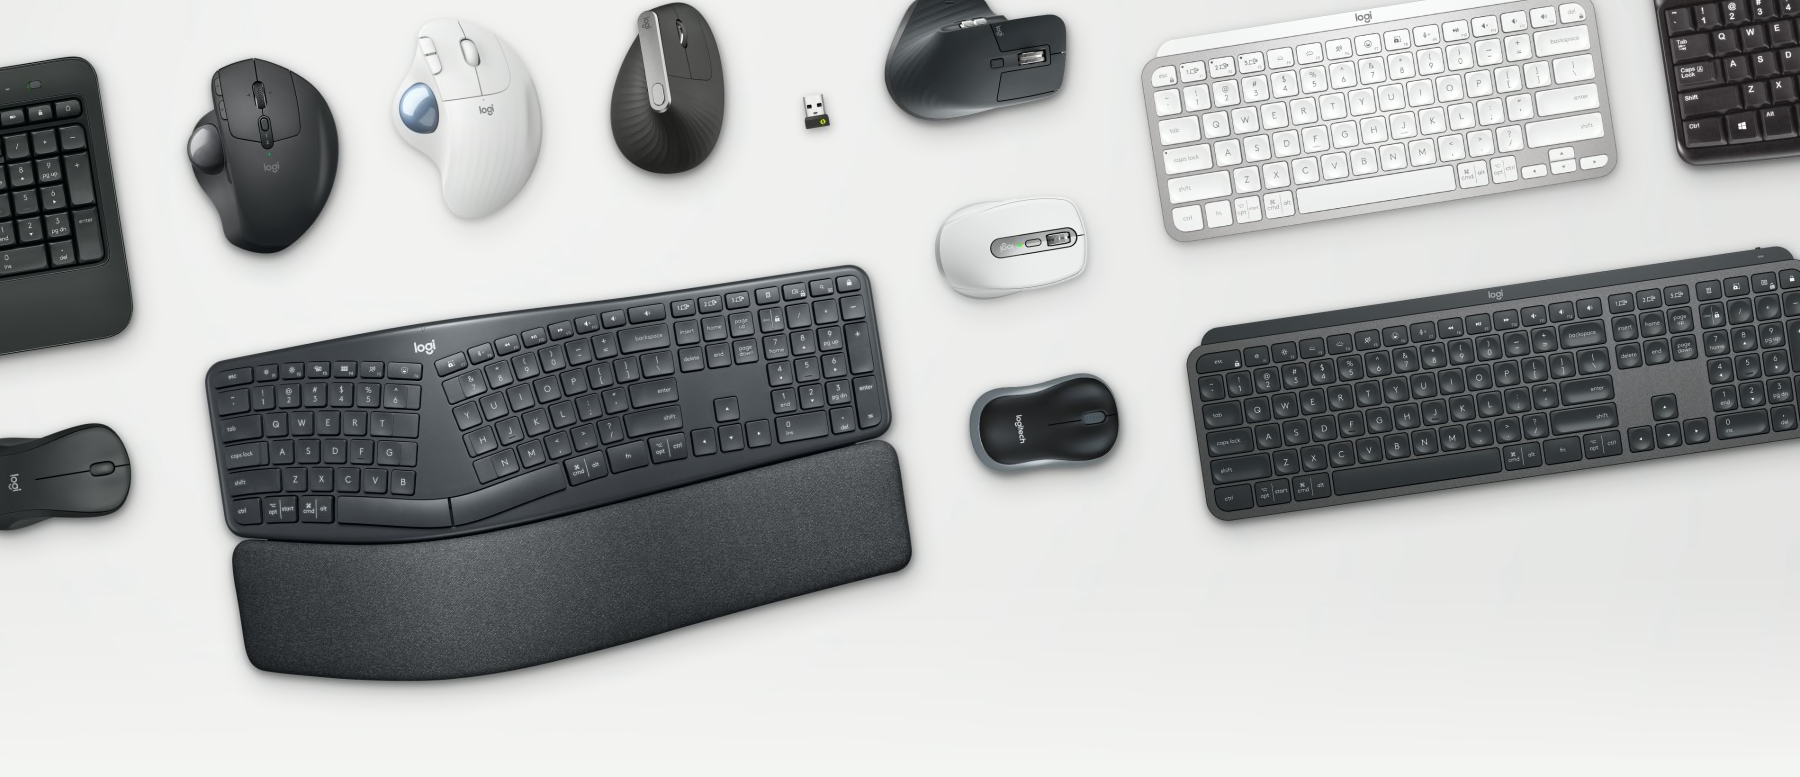 ビジネスツール - テーブル上のErgoマウスとキーボード